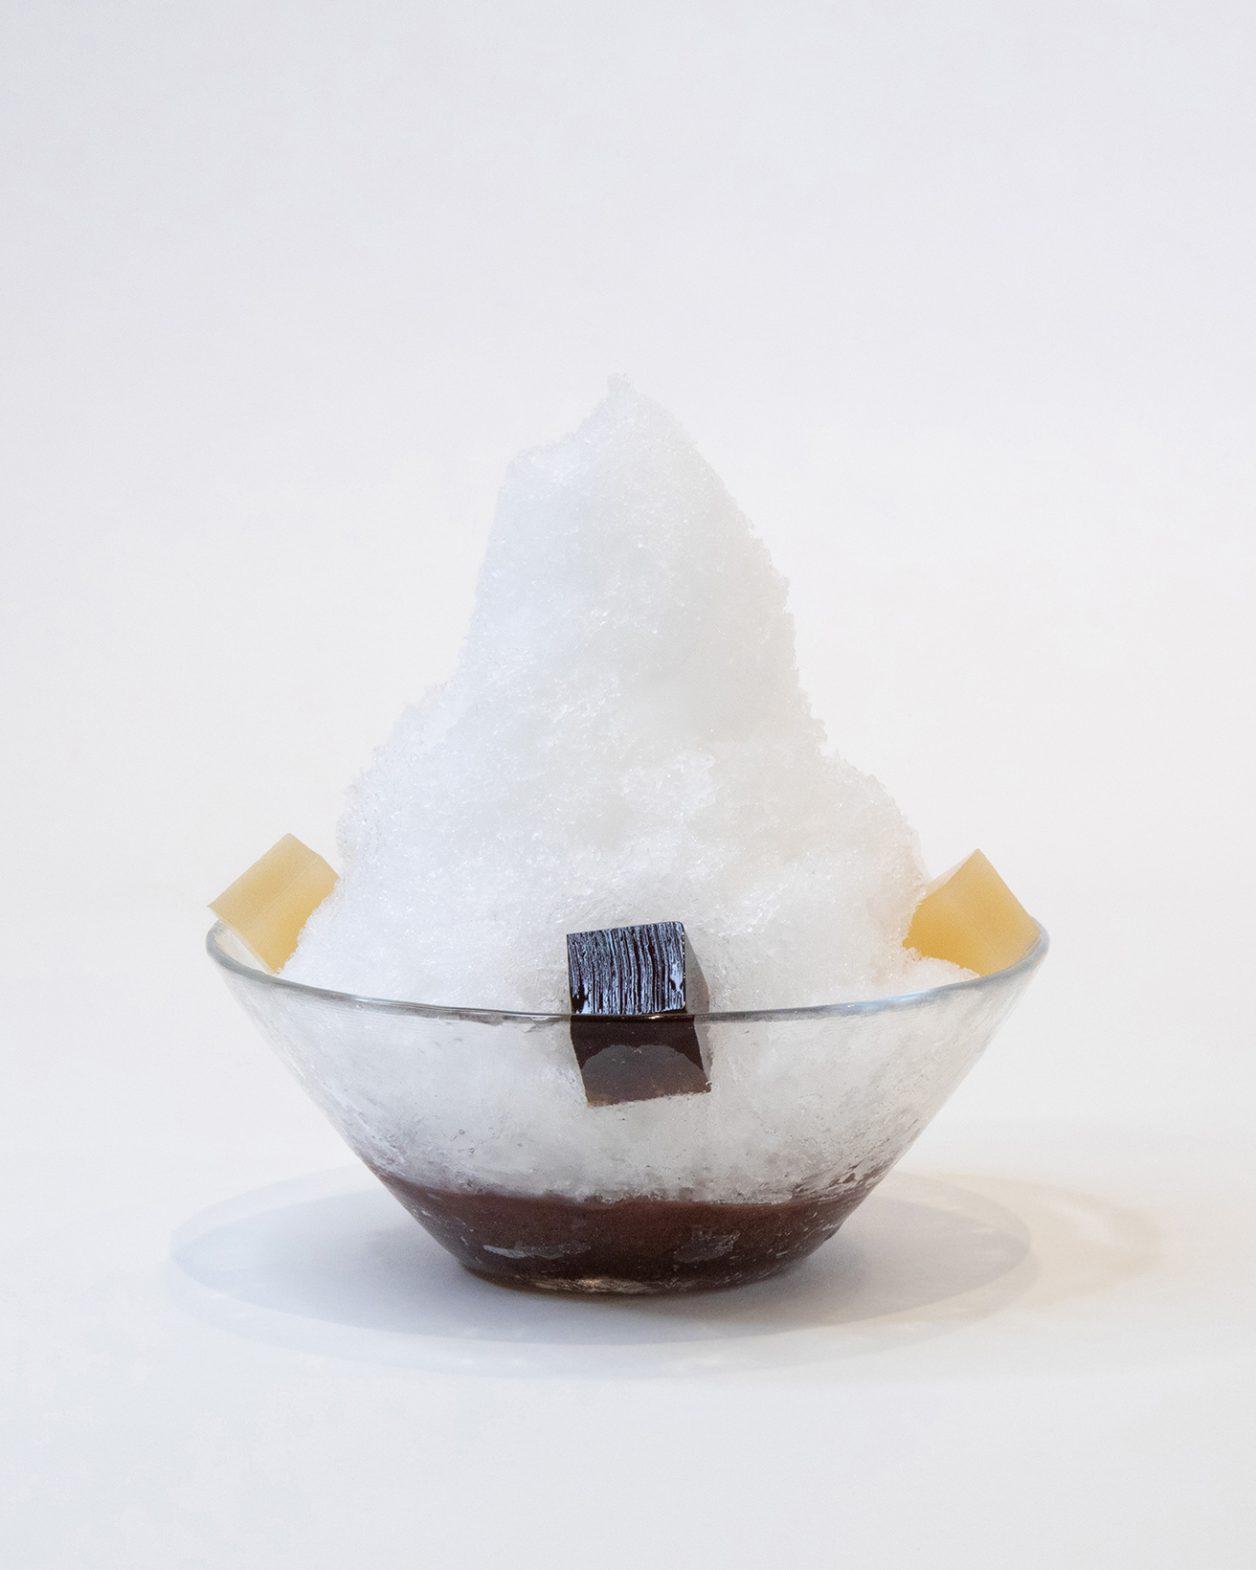 〈虎屋菓寮〉7月のかき氷は“大人のためのかき氷”。『かき氷大百科展』も。